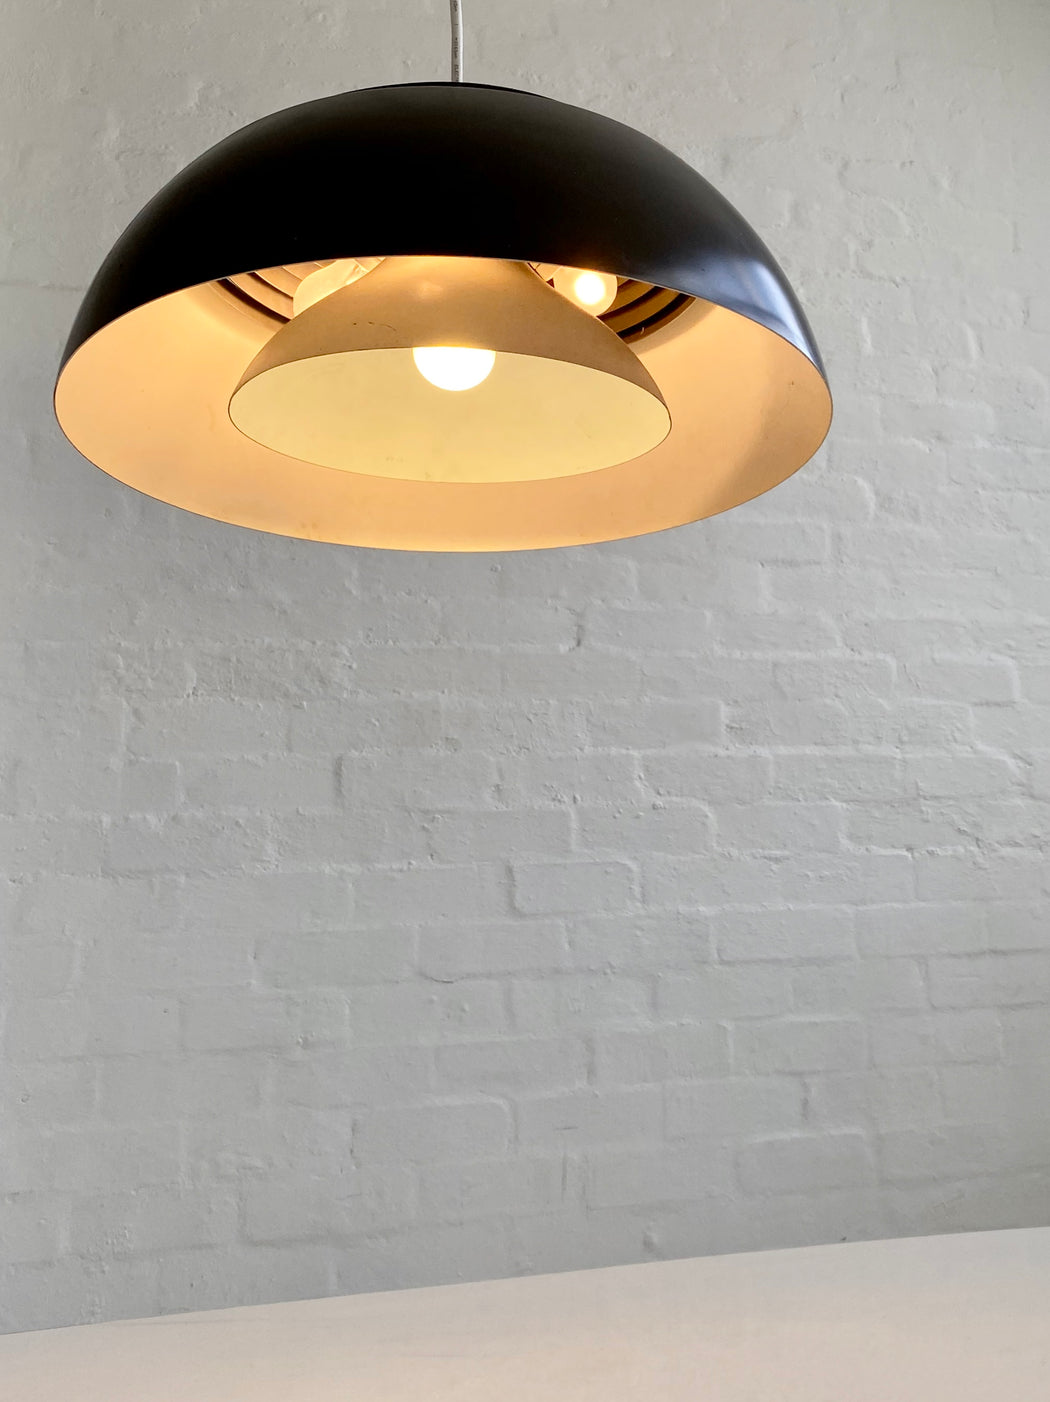 Arne Jacobsen 'AJ Royal' Pendant Light